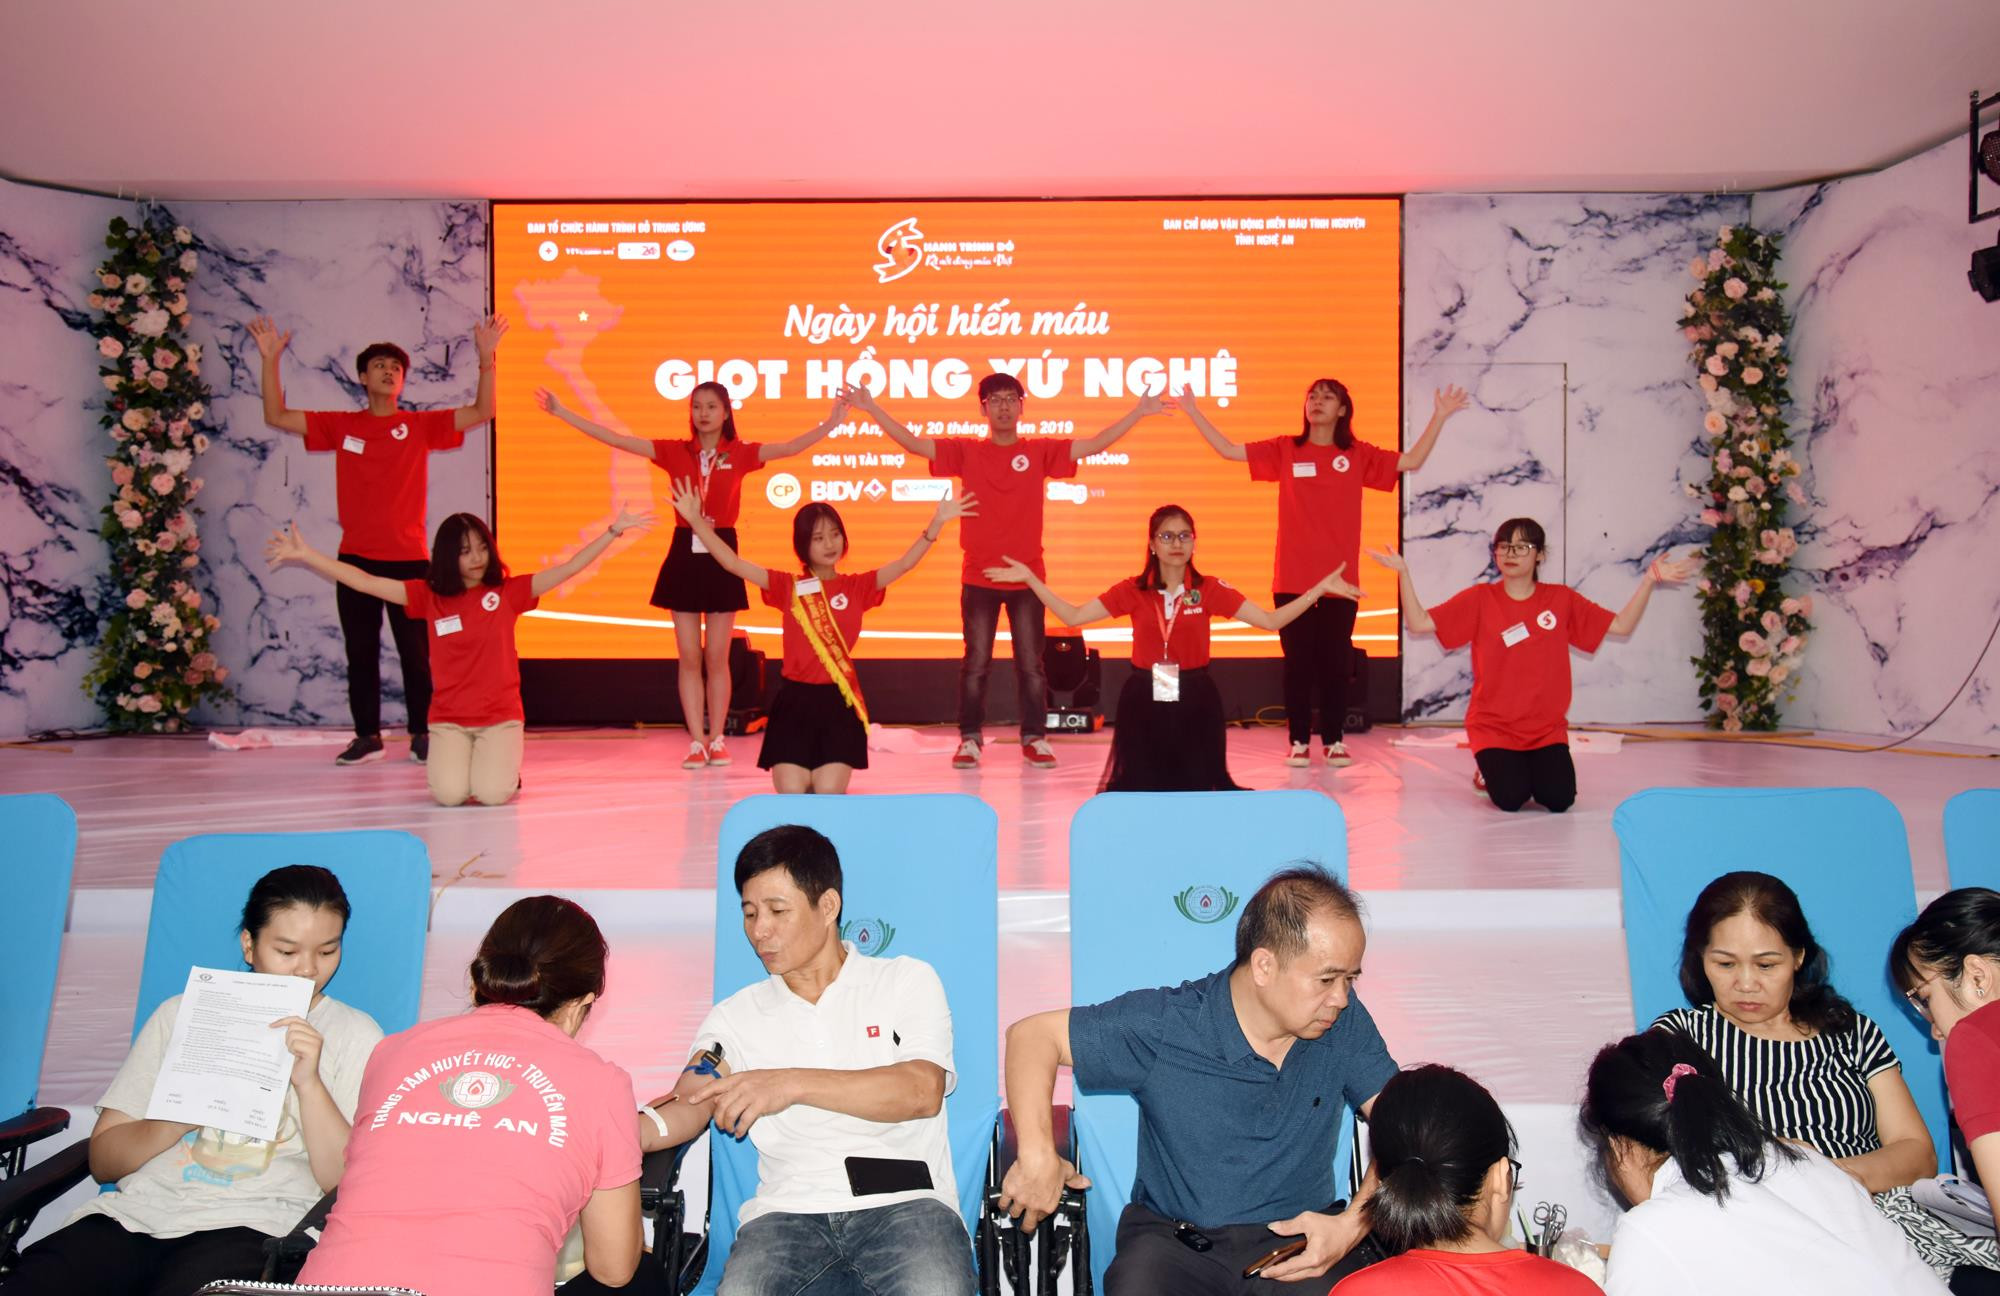 Ngày hội hiến máu “Giọt hồng Xứ Nghệ” năm 2019 là hoạt động hưởng ứng Chương trình “Hành trình Đỏ” năm 2019 về với Nghệ An. Hoạt động diễn ra vào ngày 20/7, tại thành phố Vinh. Ảnh: Thành Chung